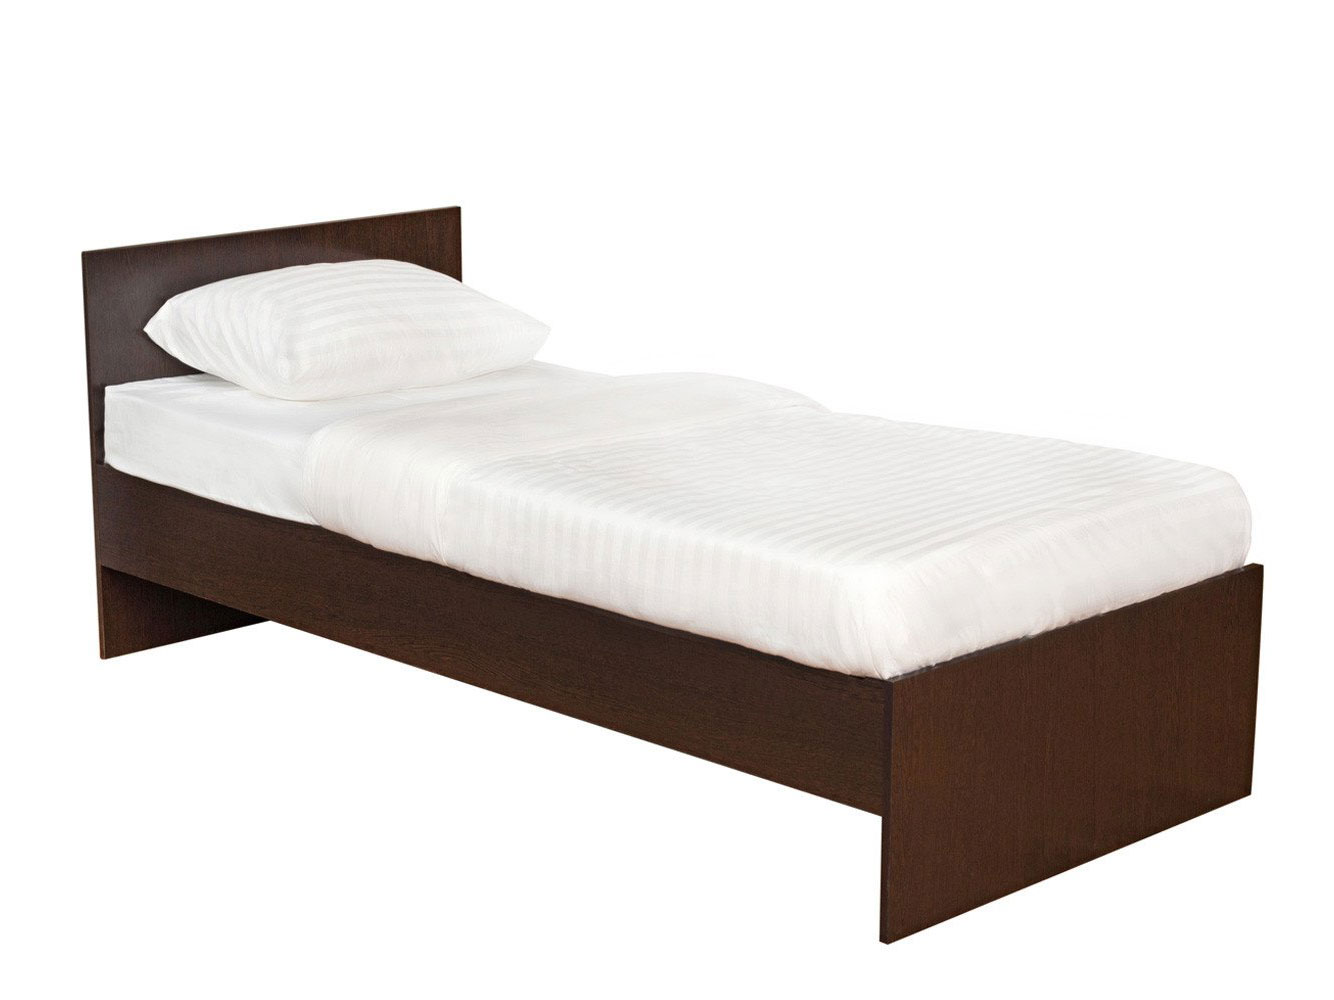 Односпальная кровать НИКОЛЬ кровать 900х2000 мм, С основанием, Венге